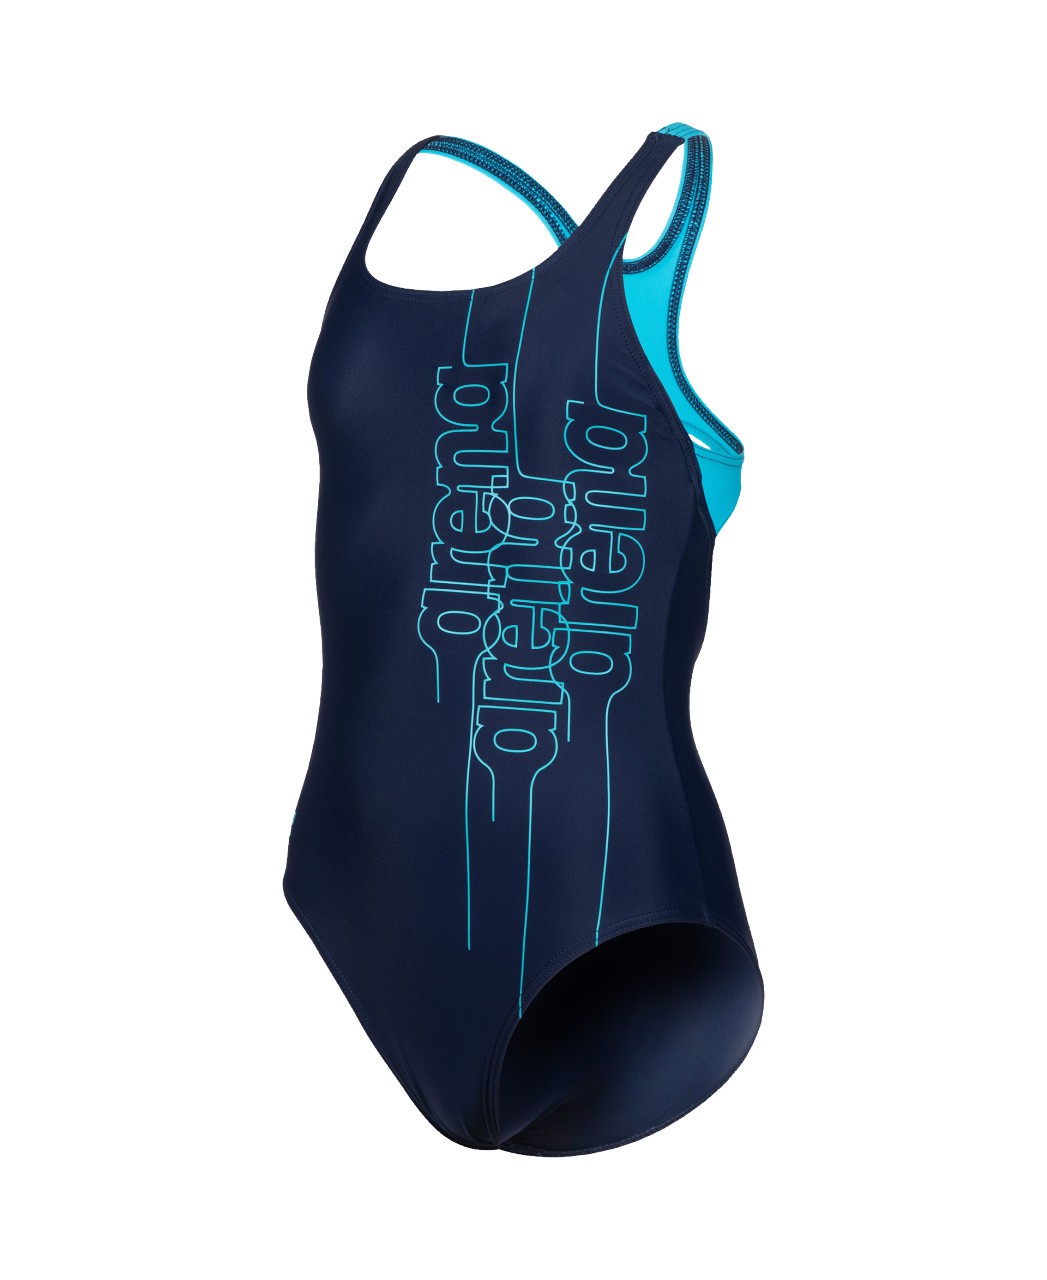 G Swimsuit Pro Back Graphic L